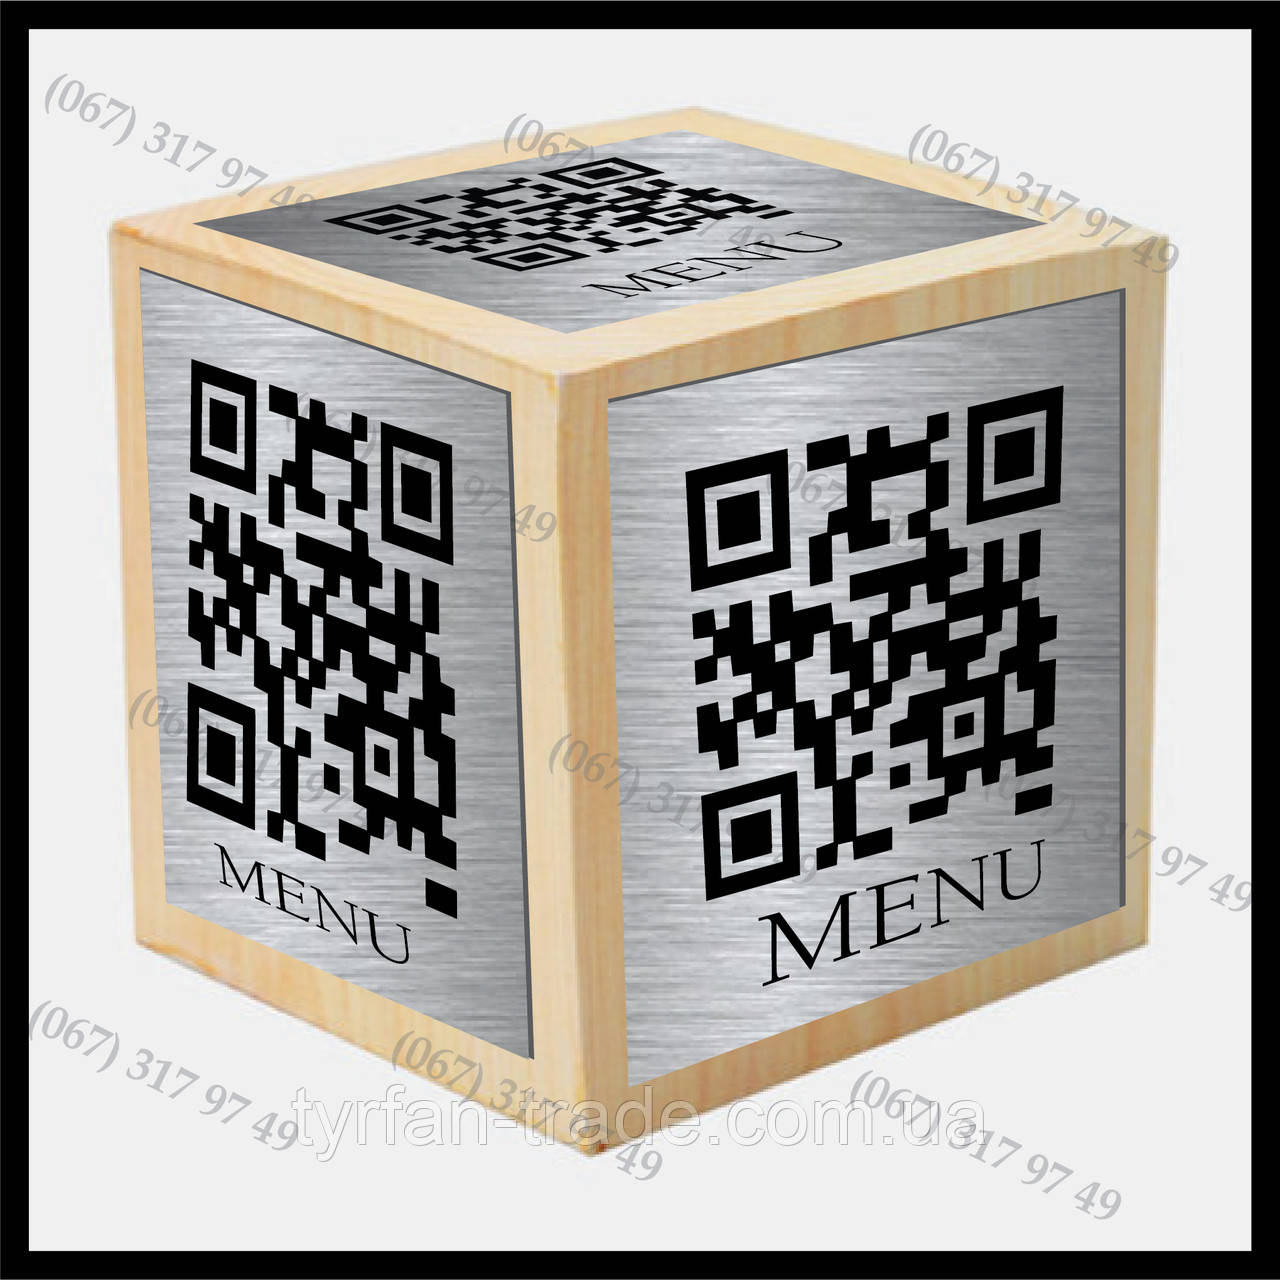 Дерев'яний кубик-меню з металевими пластинами та qr кодом для кафе ресторанів пабів барів готелів тощо